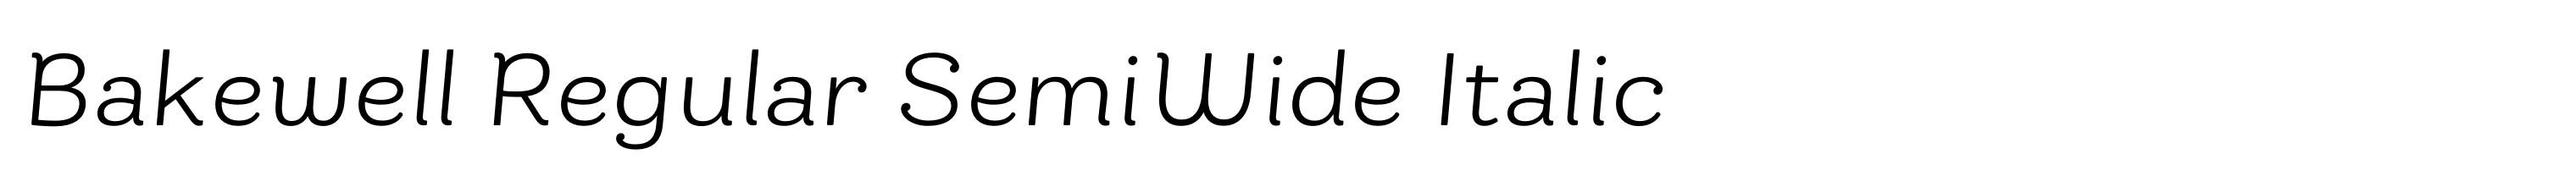 Bakewell Regular SemiWide Italic